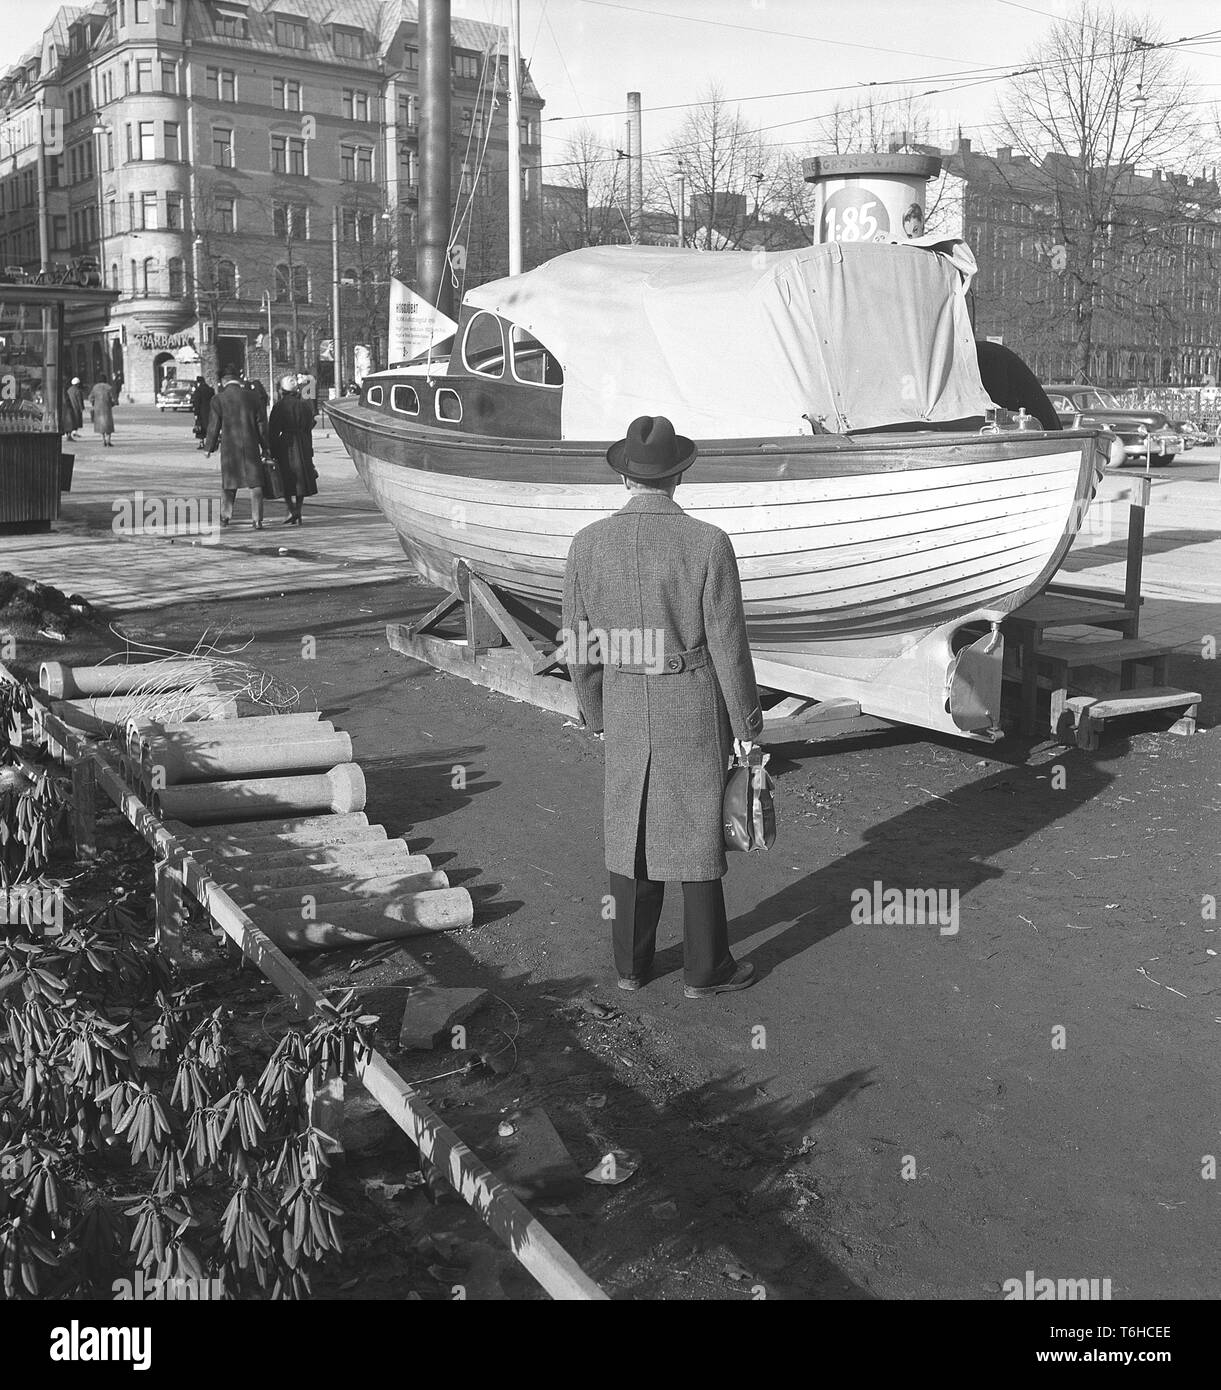 Années 1950 l'homme. Un homme est debout devant un tout nouveau sur ce bateau en bois afficher comme étant le premier prix j'ai une loterie. Kristoffersson Photo ref BTE51-8. Suède 1956 Banque D'Images